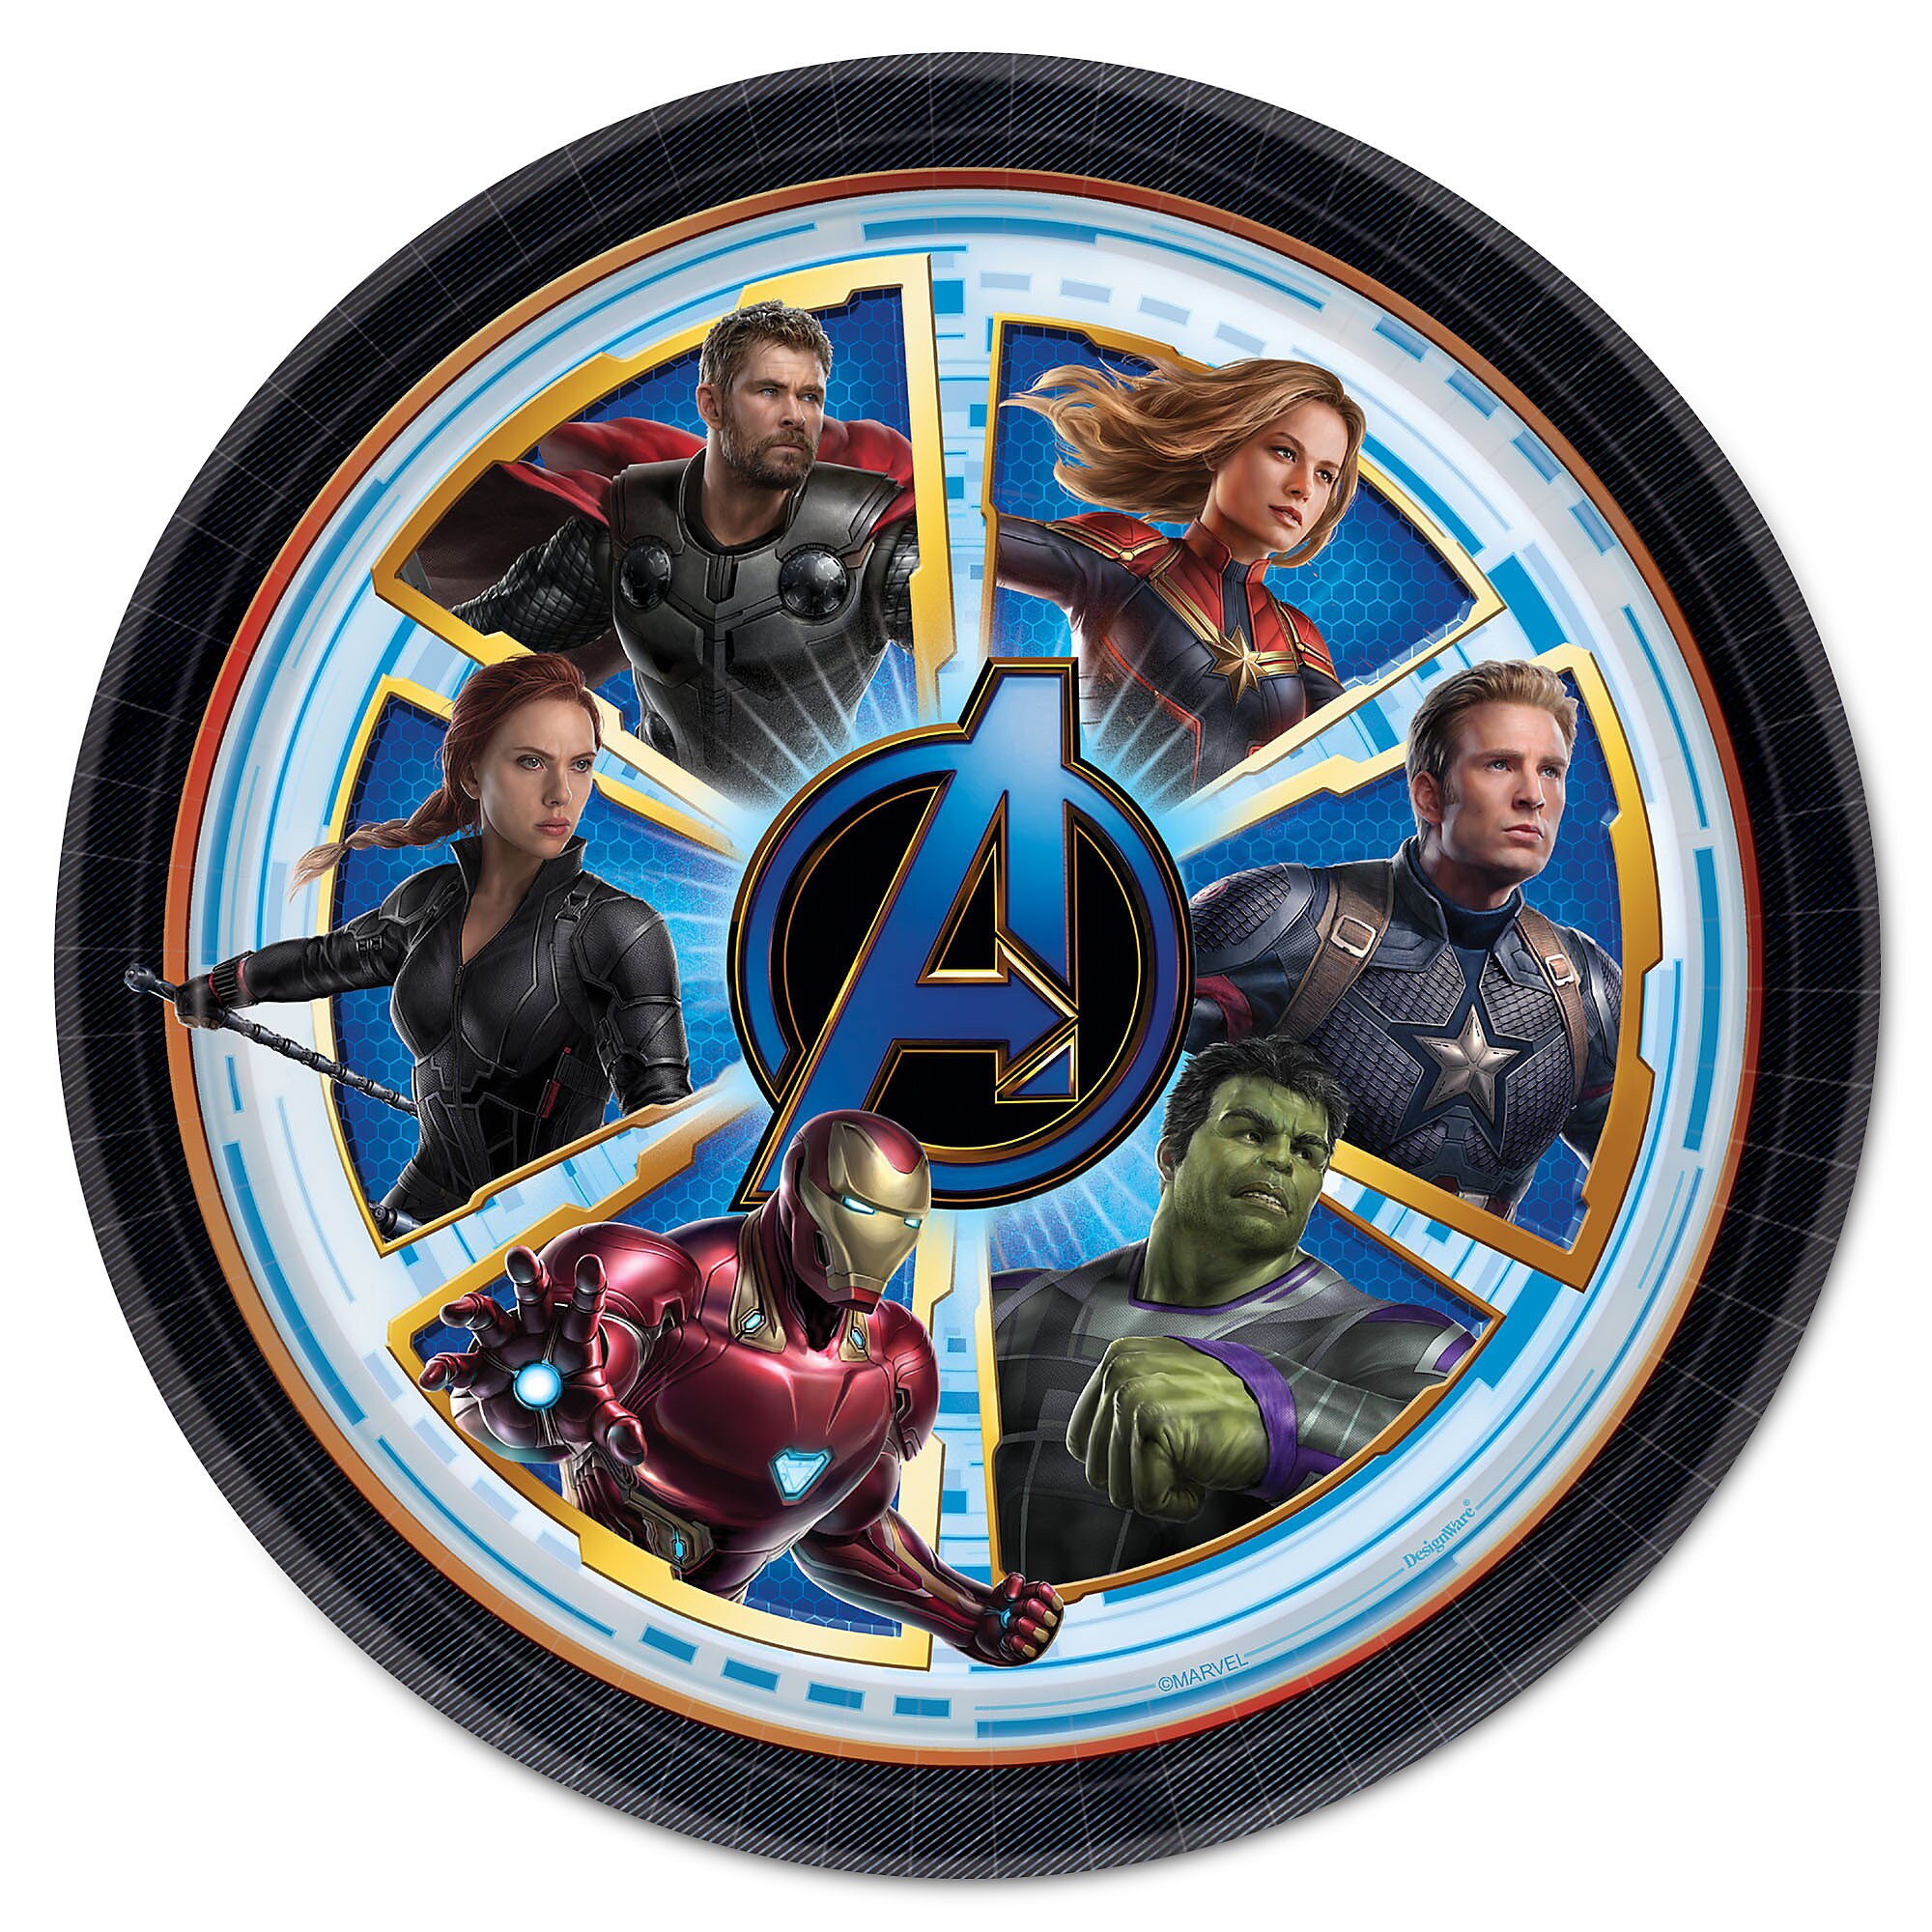 Marvel's Avengers: Endgame Lunch Plates